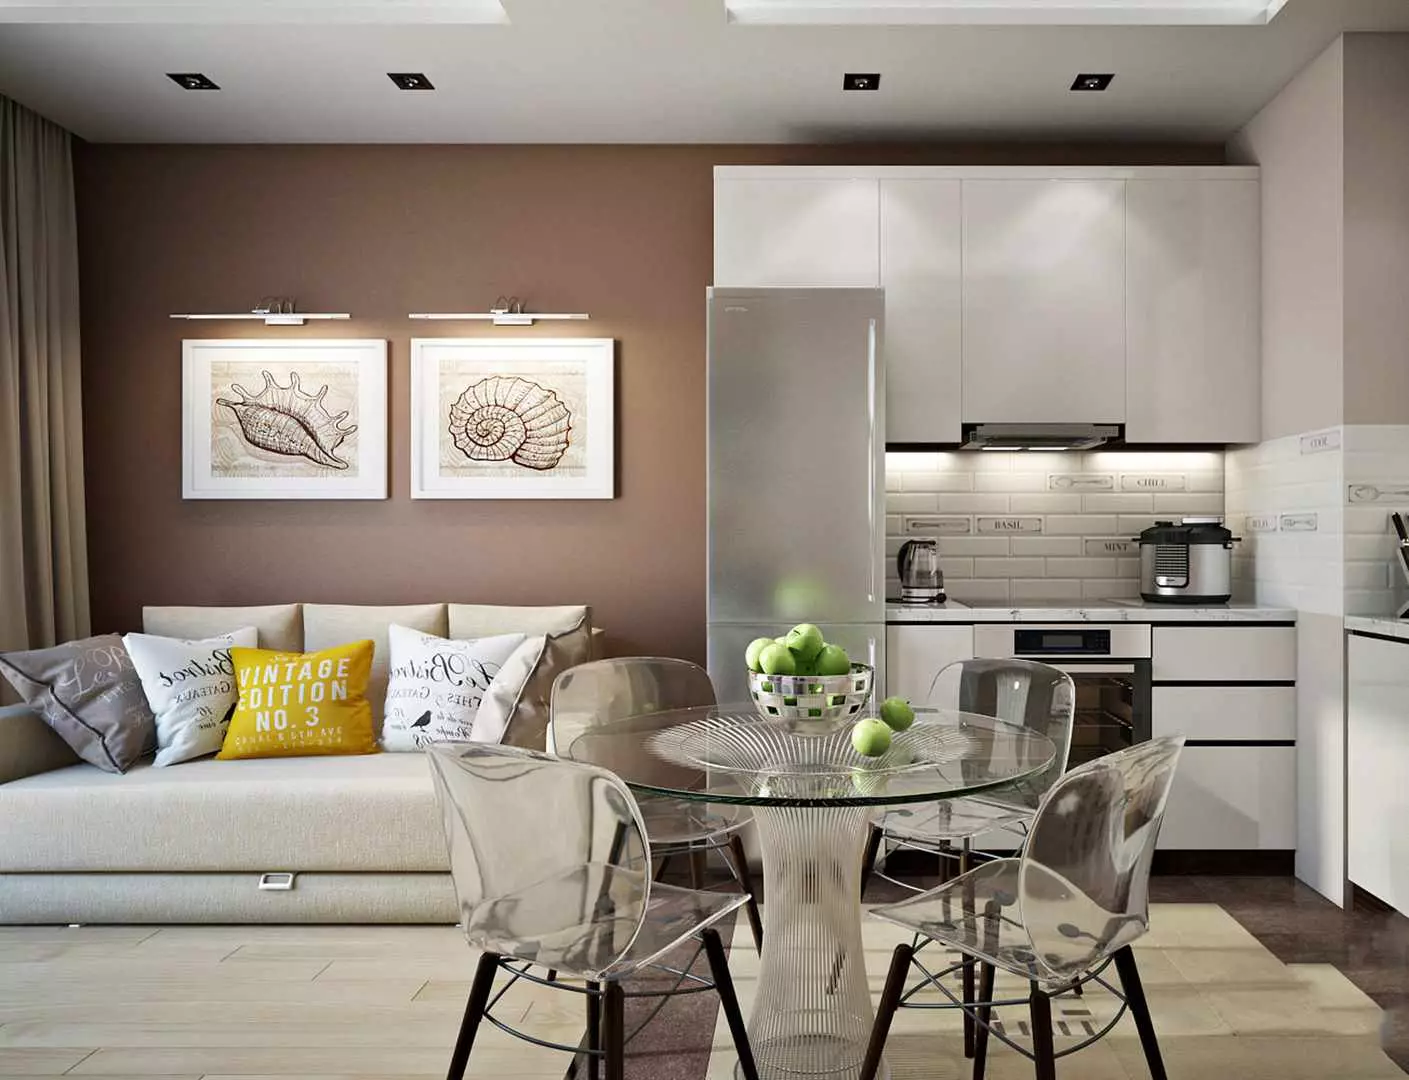 مطبخ المعيشة 13 مترا مربعا. م (58 صور): خيارات تصميم المطبخ الداخل مع أريكة وغيرها من الأثاث 9516_37